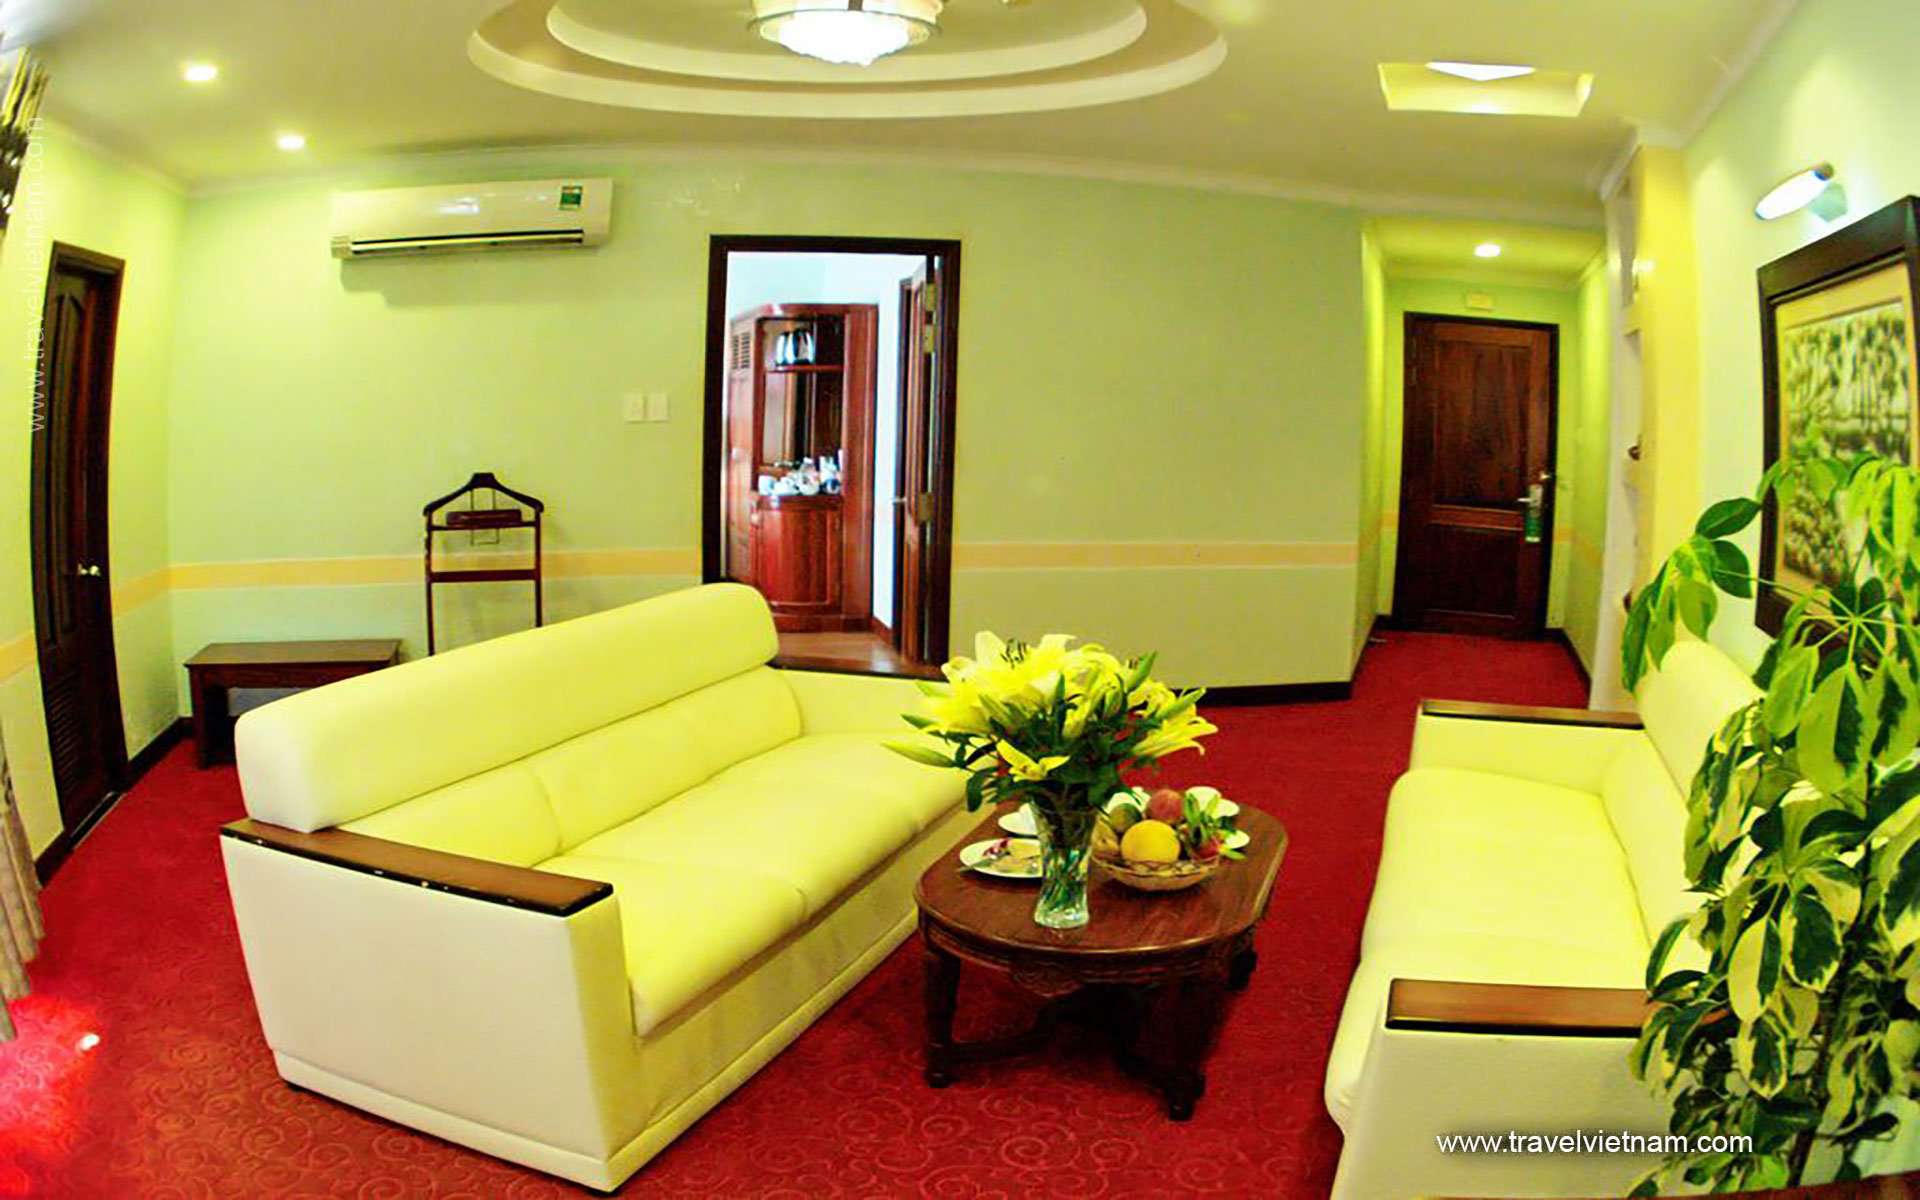 Ninh Kieu 2 - Hoa Binh Hotel 